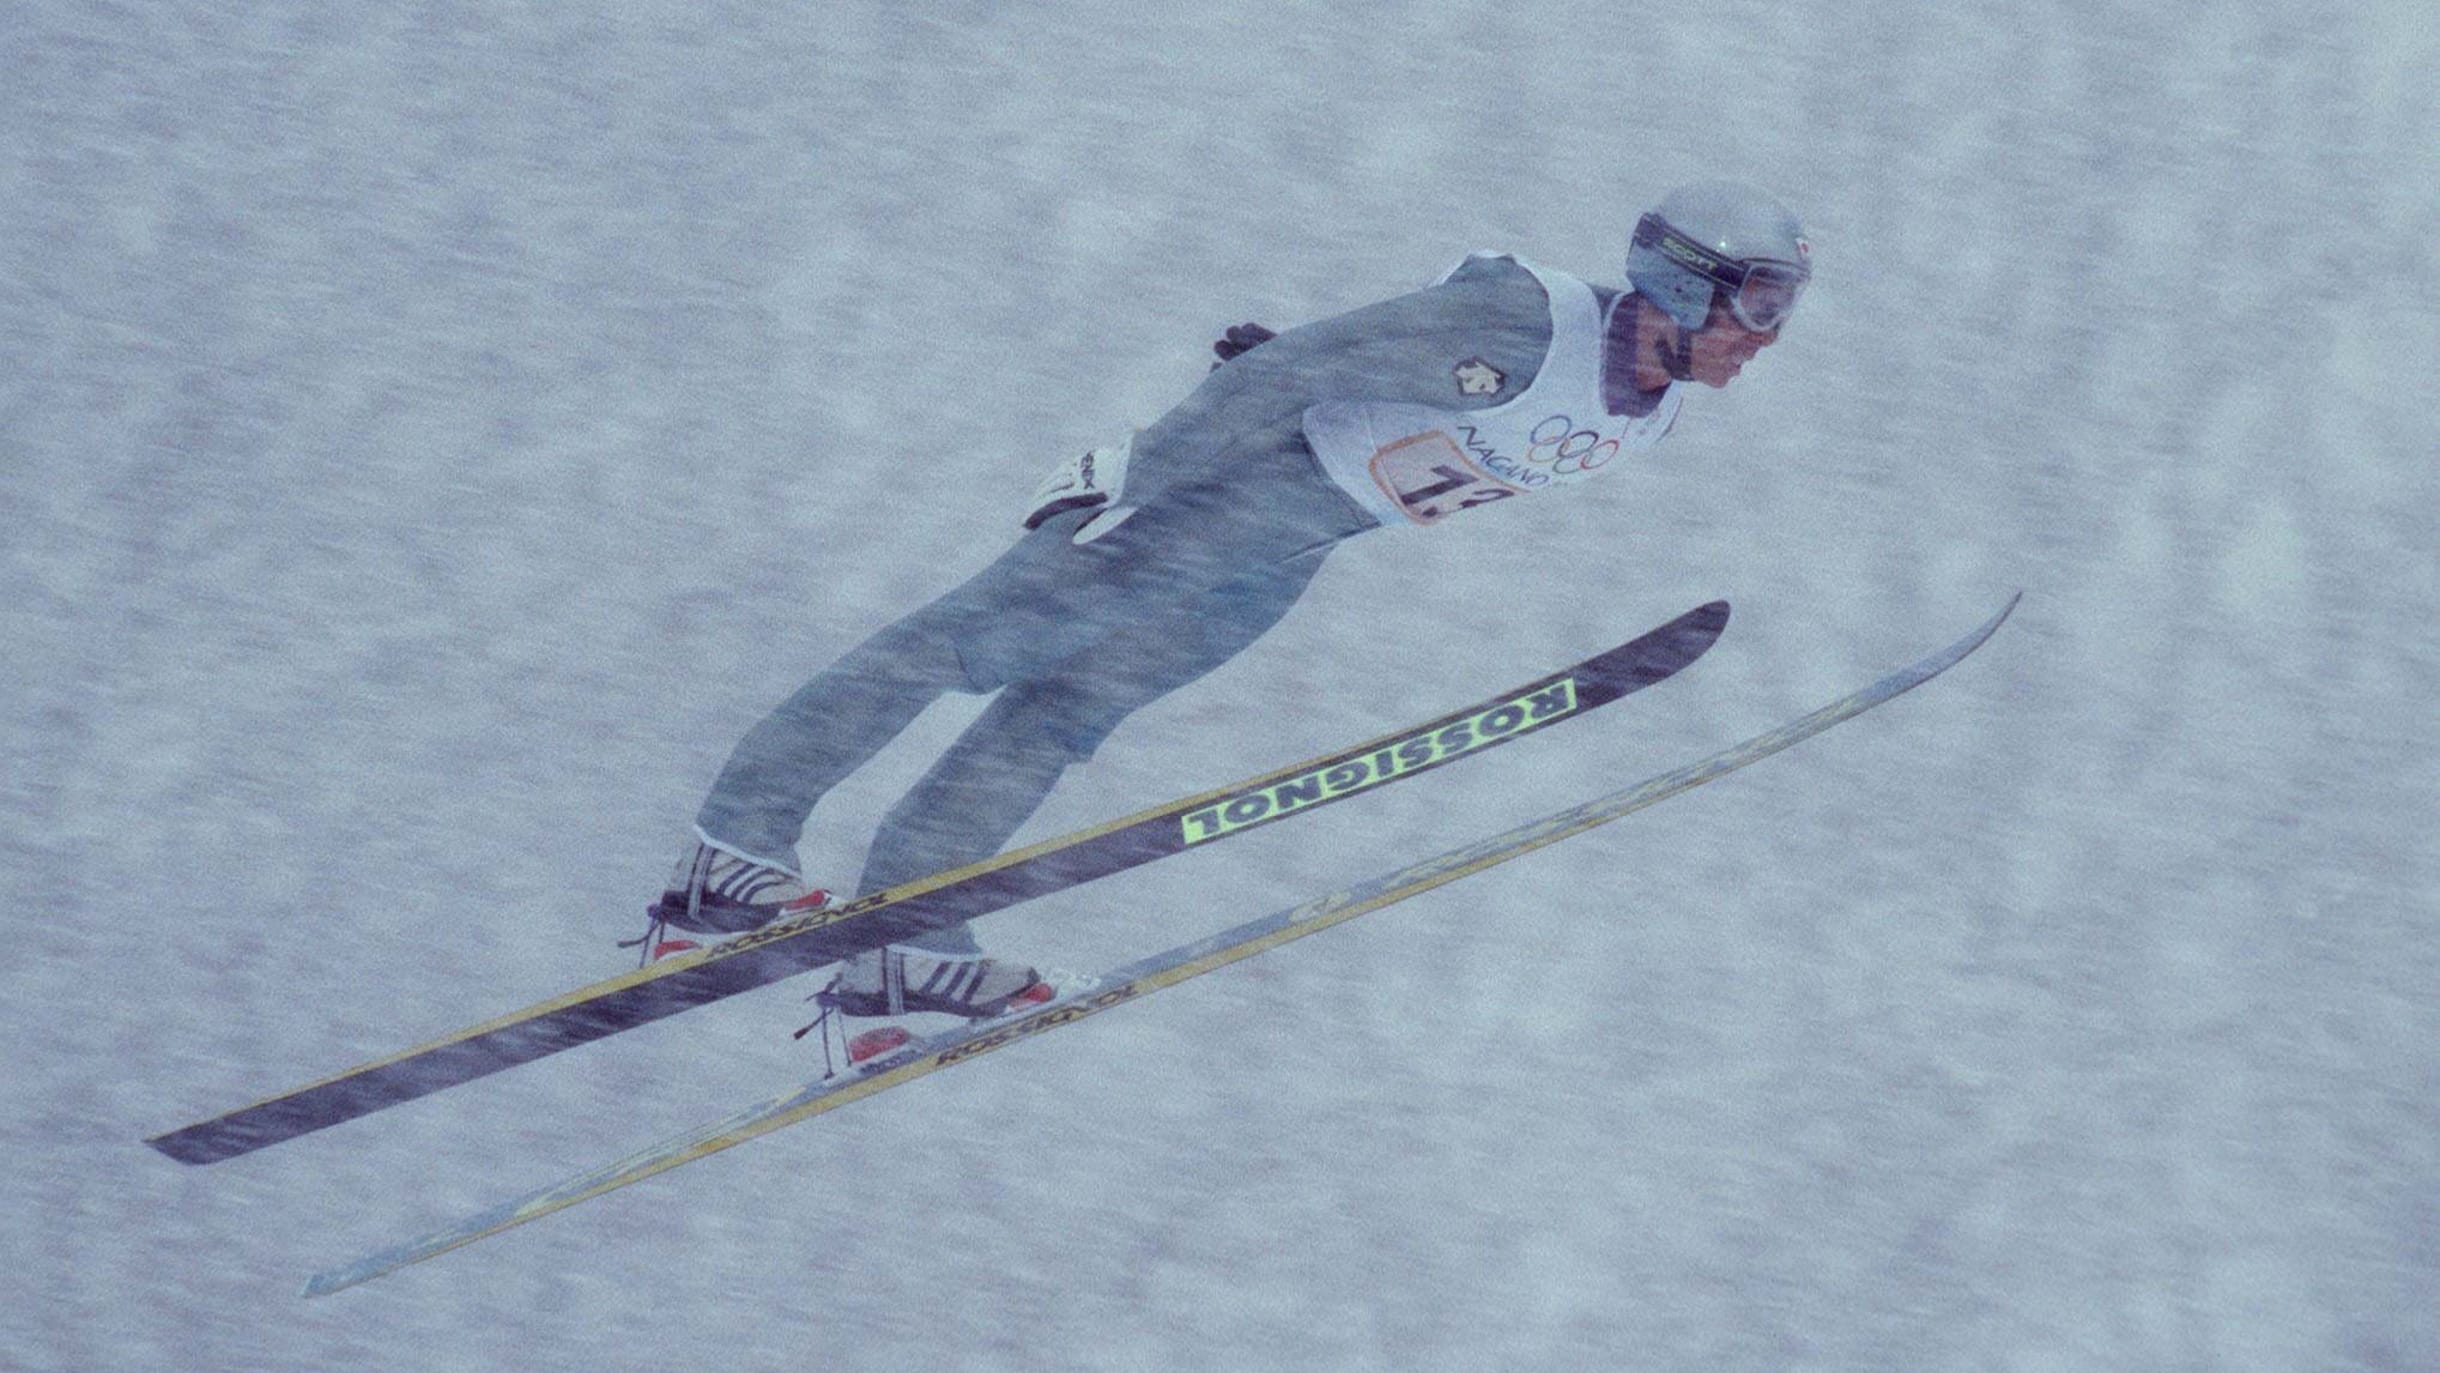 オリンピックのレジェンドは語る 原田雅彦 スキージャンプ 言葉にならない空飛ぶ感覚